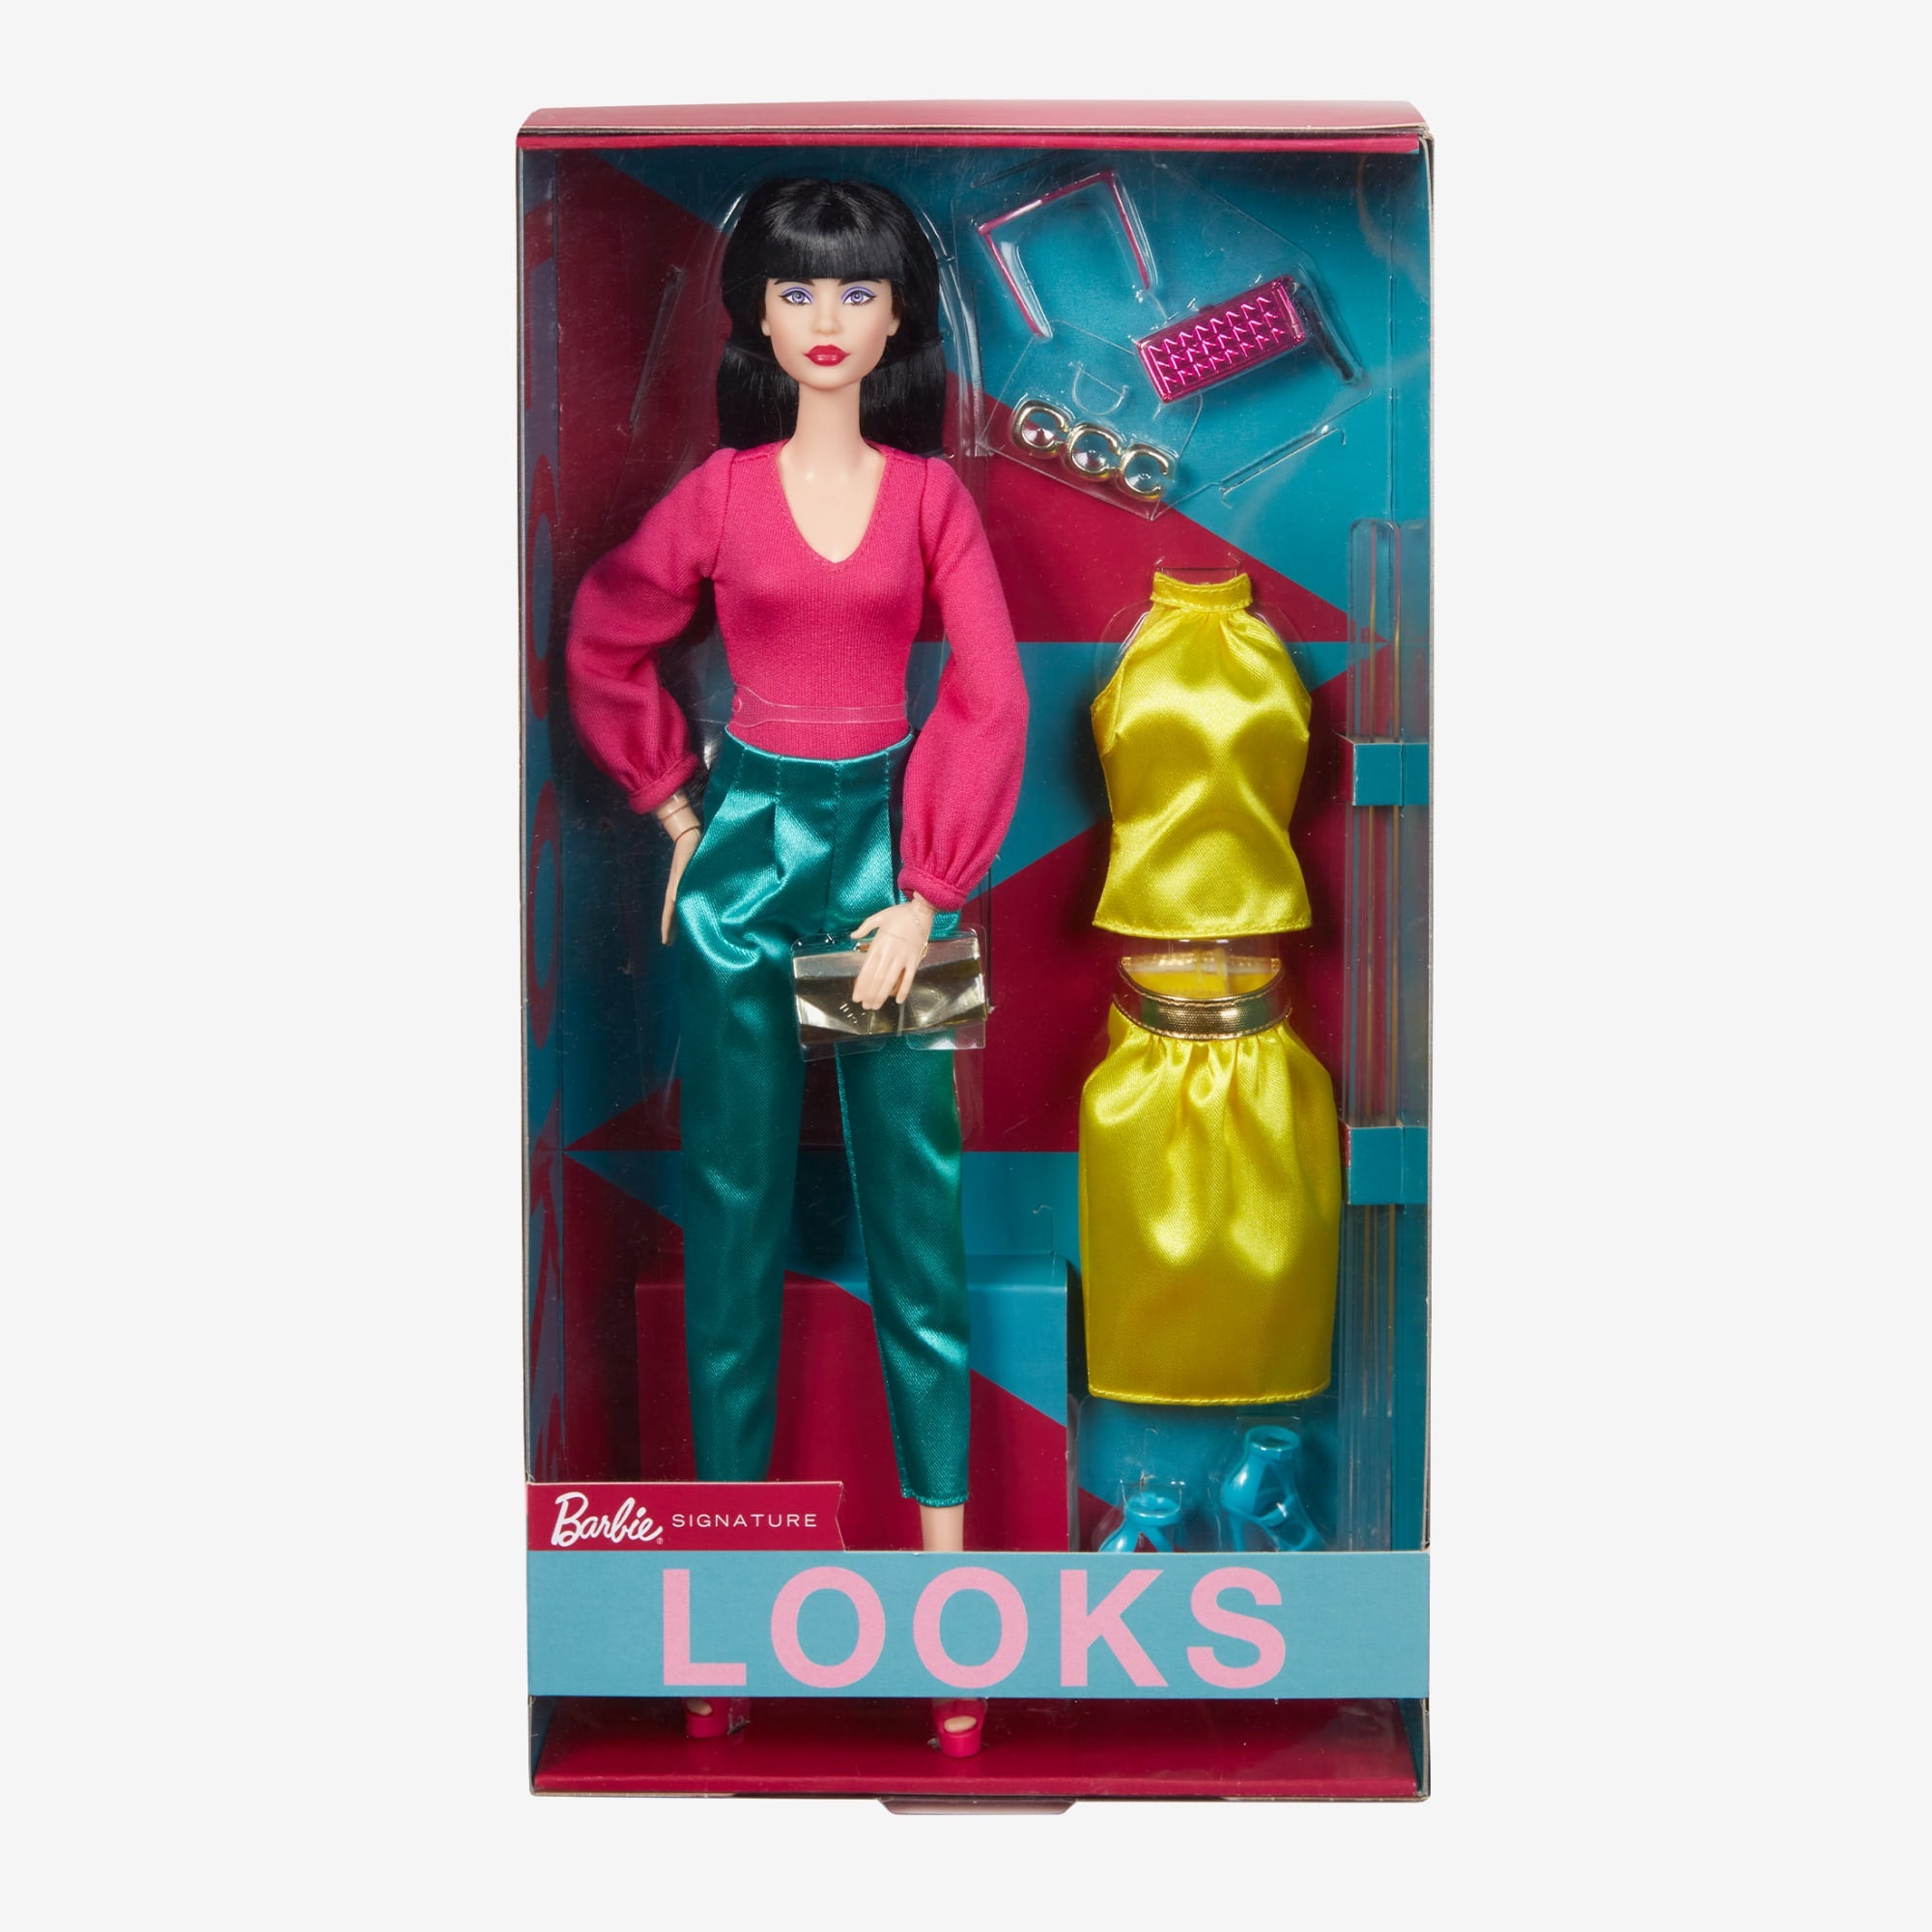 Barbie Looks Signature Looks Doll Multicolor